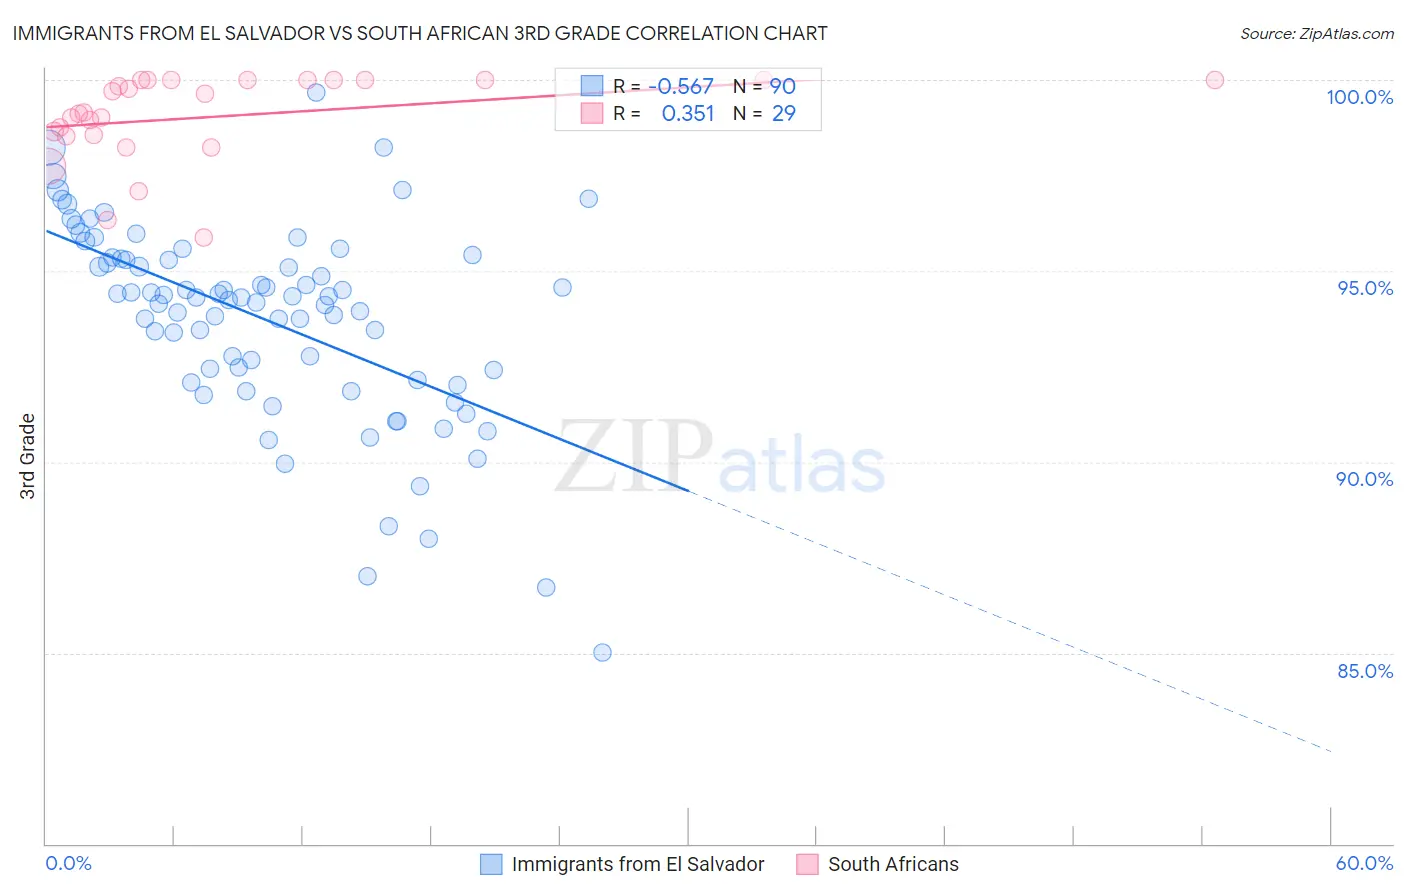 Immigrants from El Salvador vs South African 3rd Grade